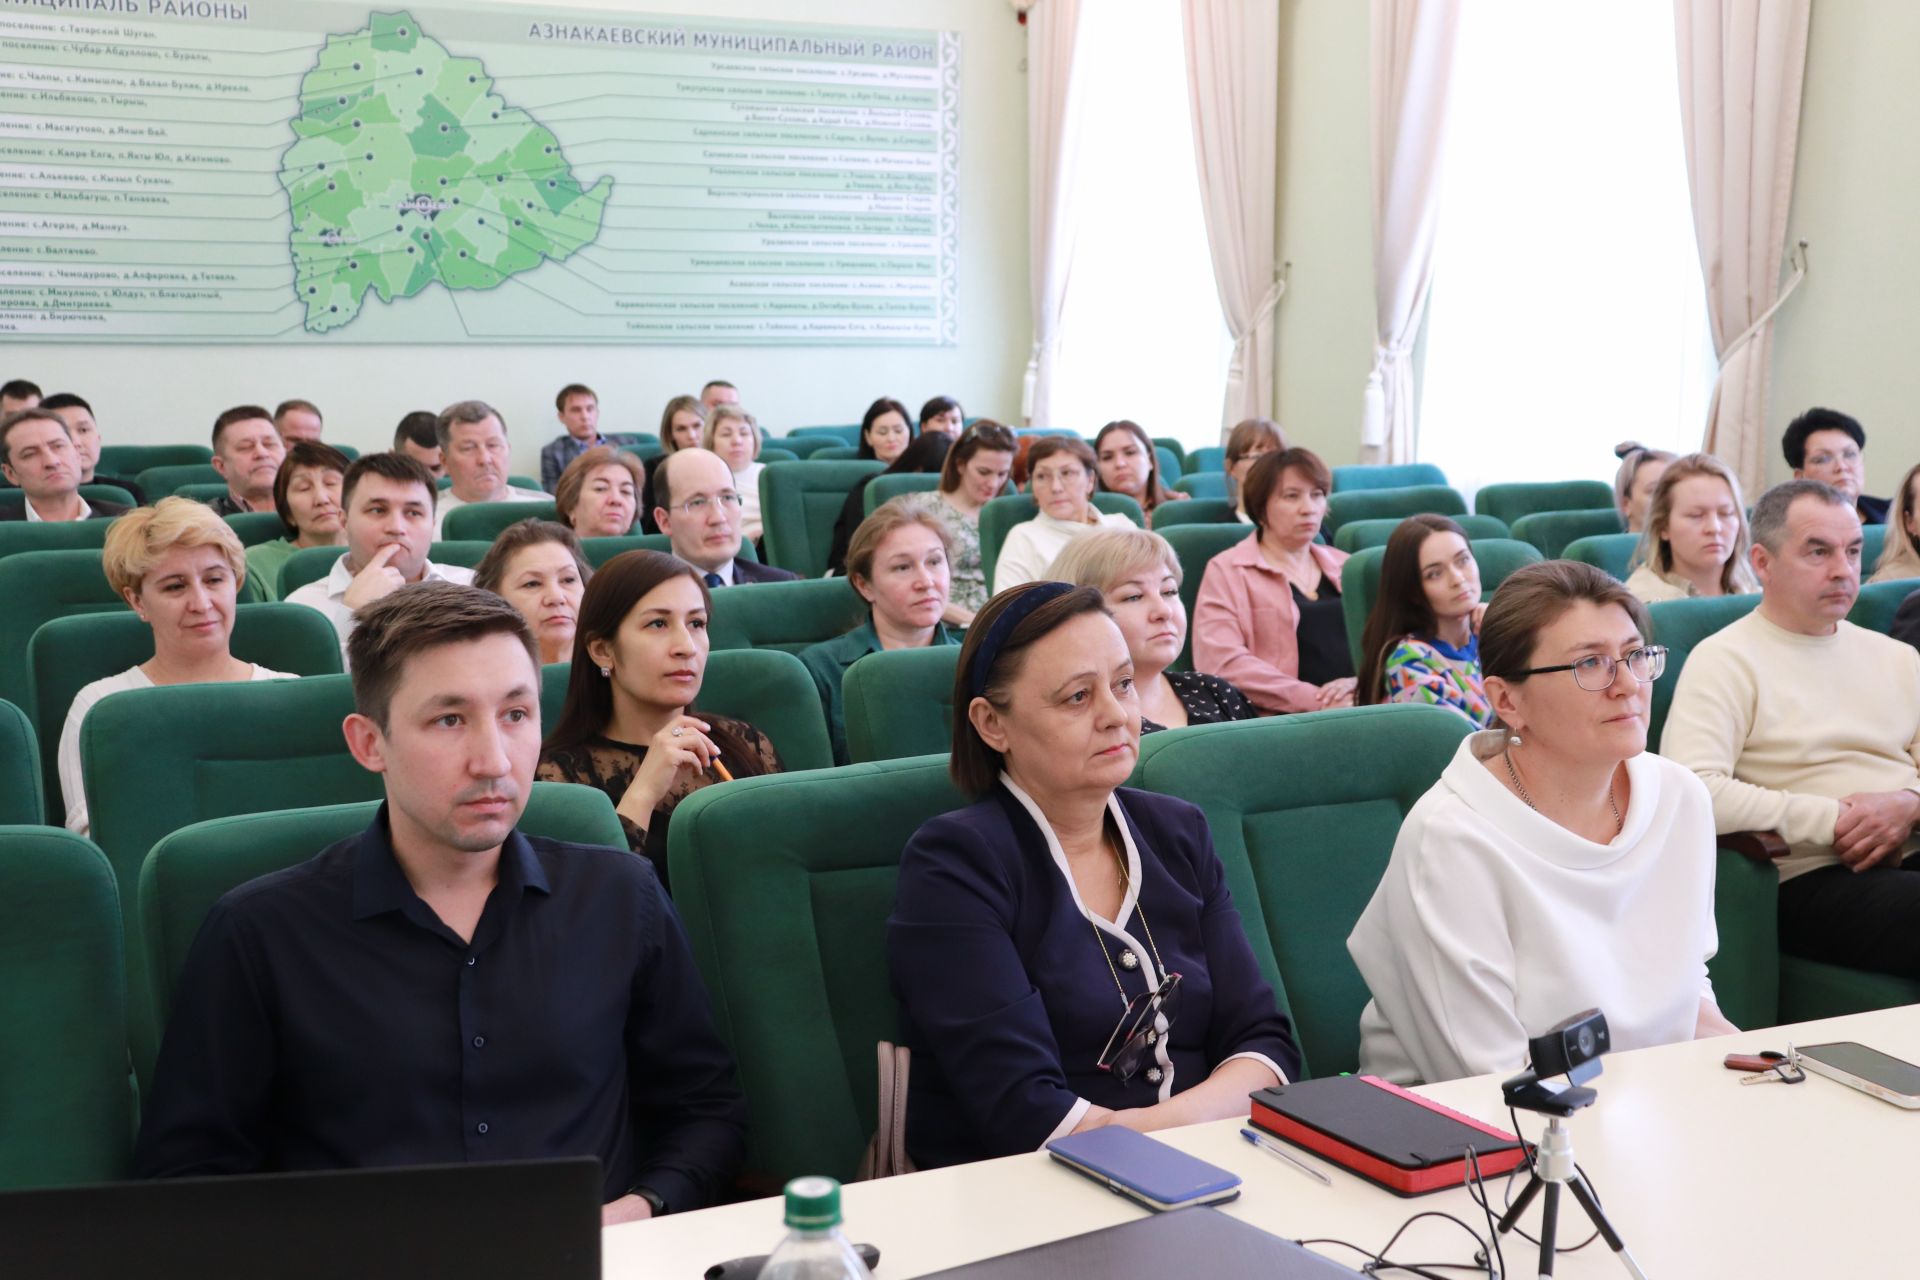 В Азнакаево состоялась встреча предпринимателей